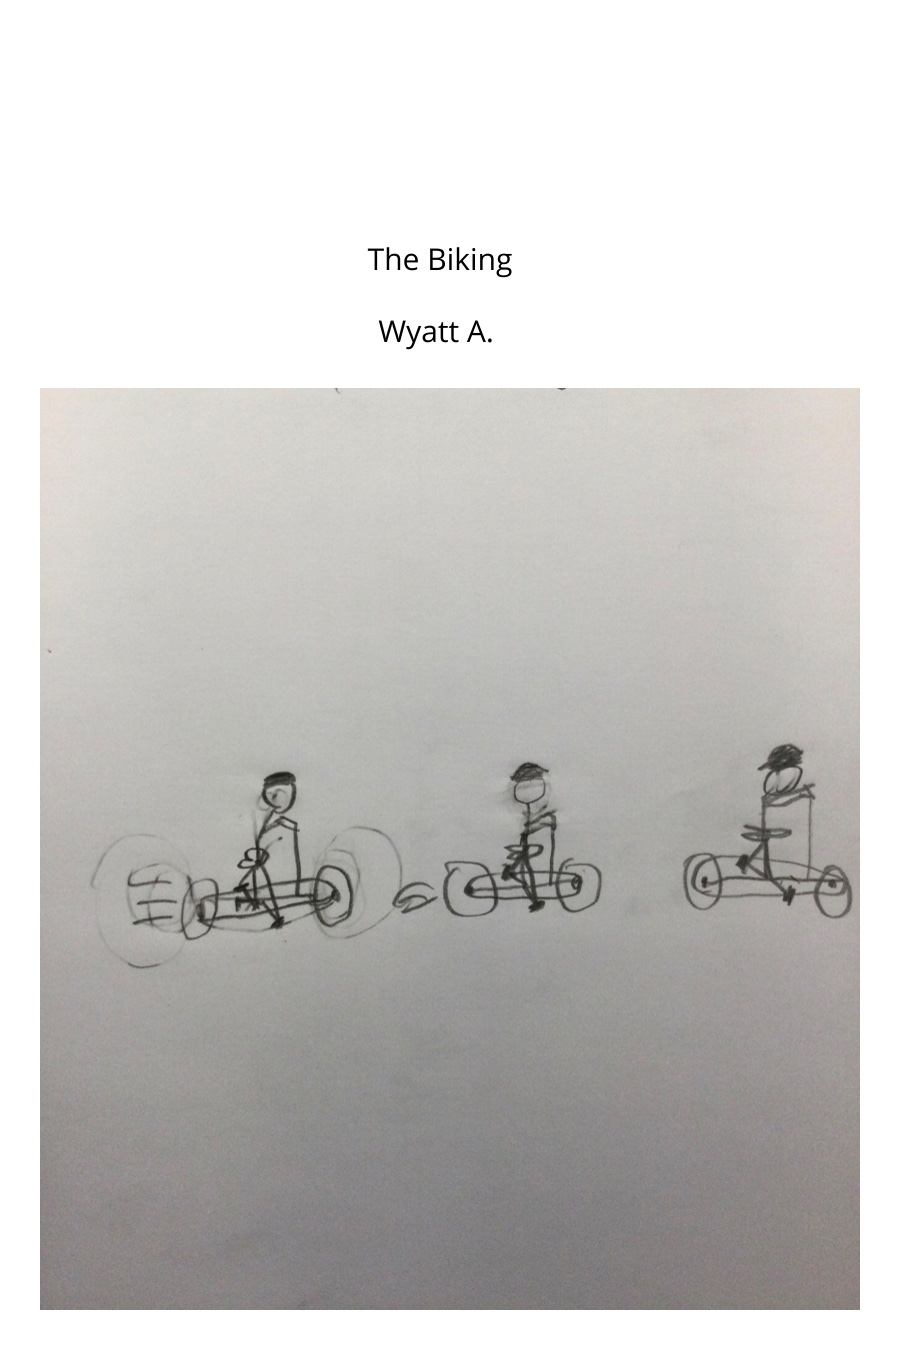 The Biking by Wyatt A